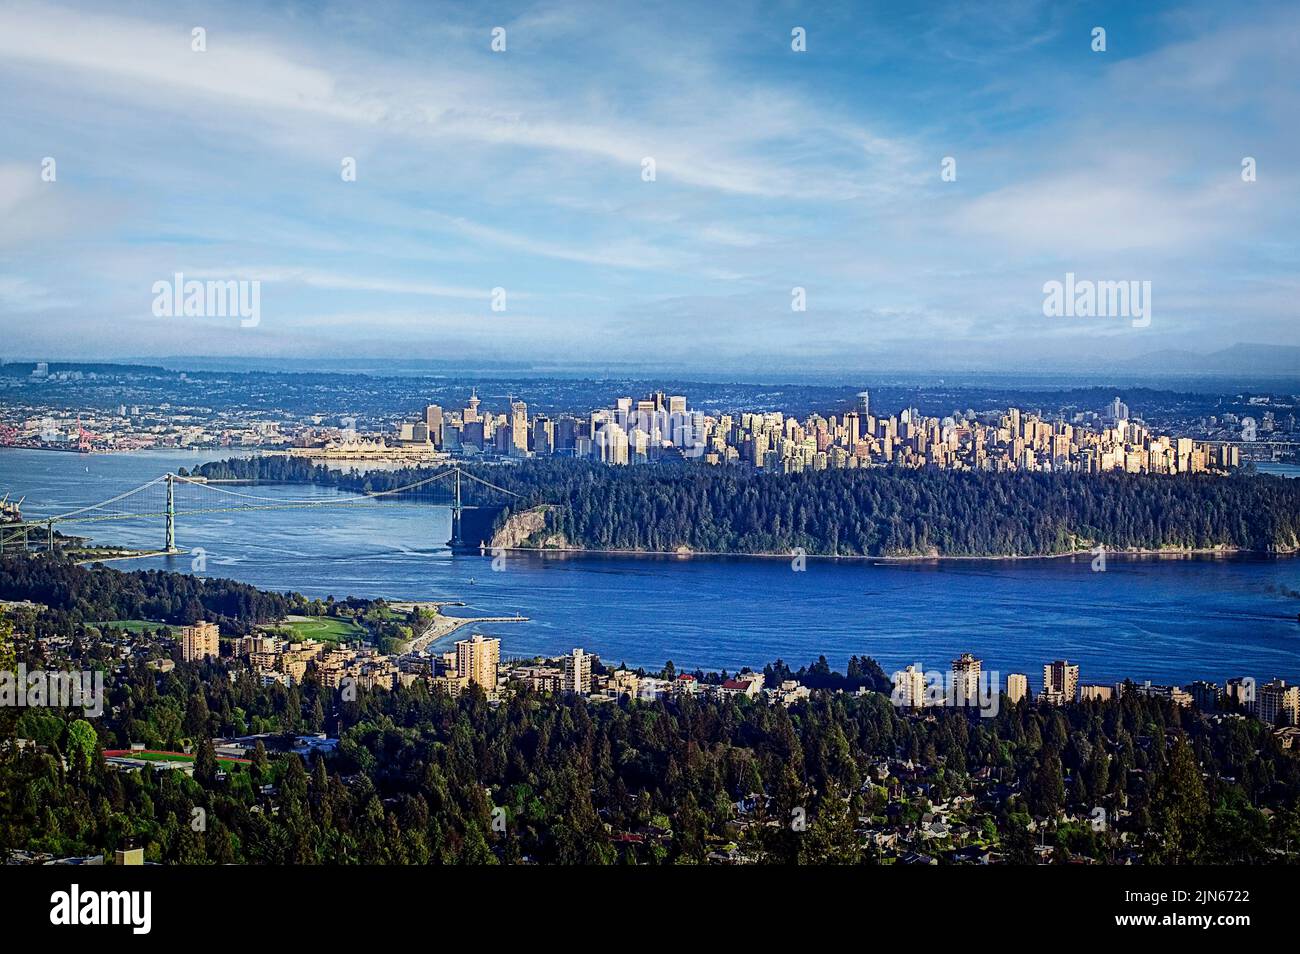 Centro de Vancouver y el Puente Lions Gate en la costa oeste de British Columbia, Canadá. Foto de stock